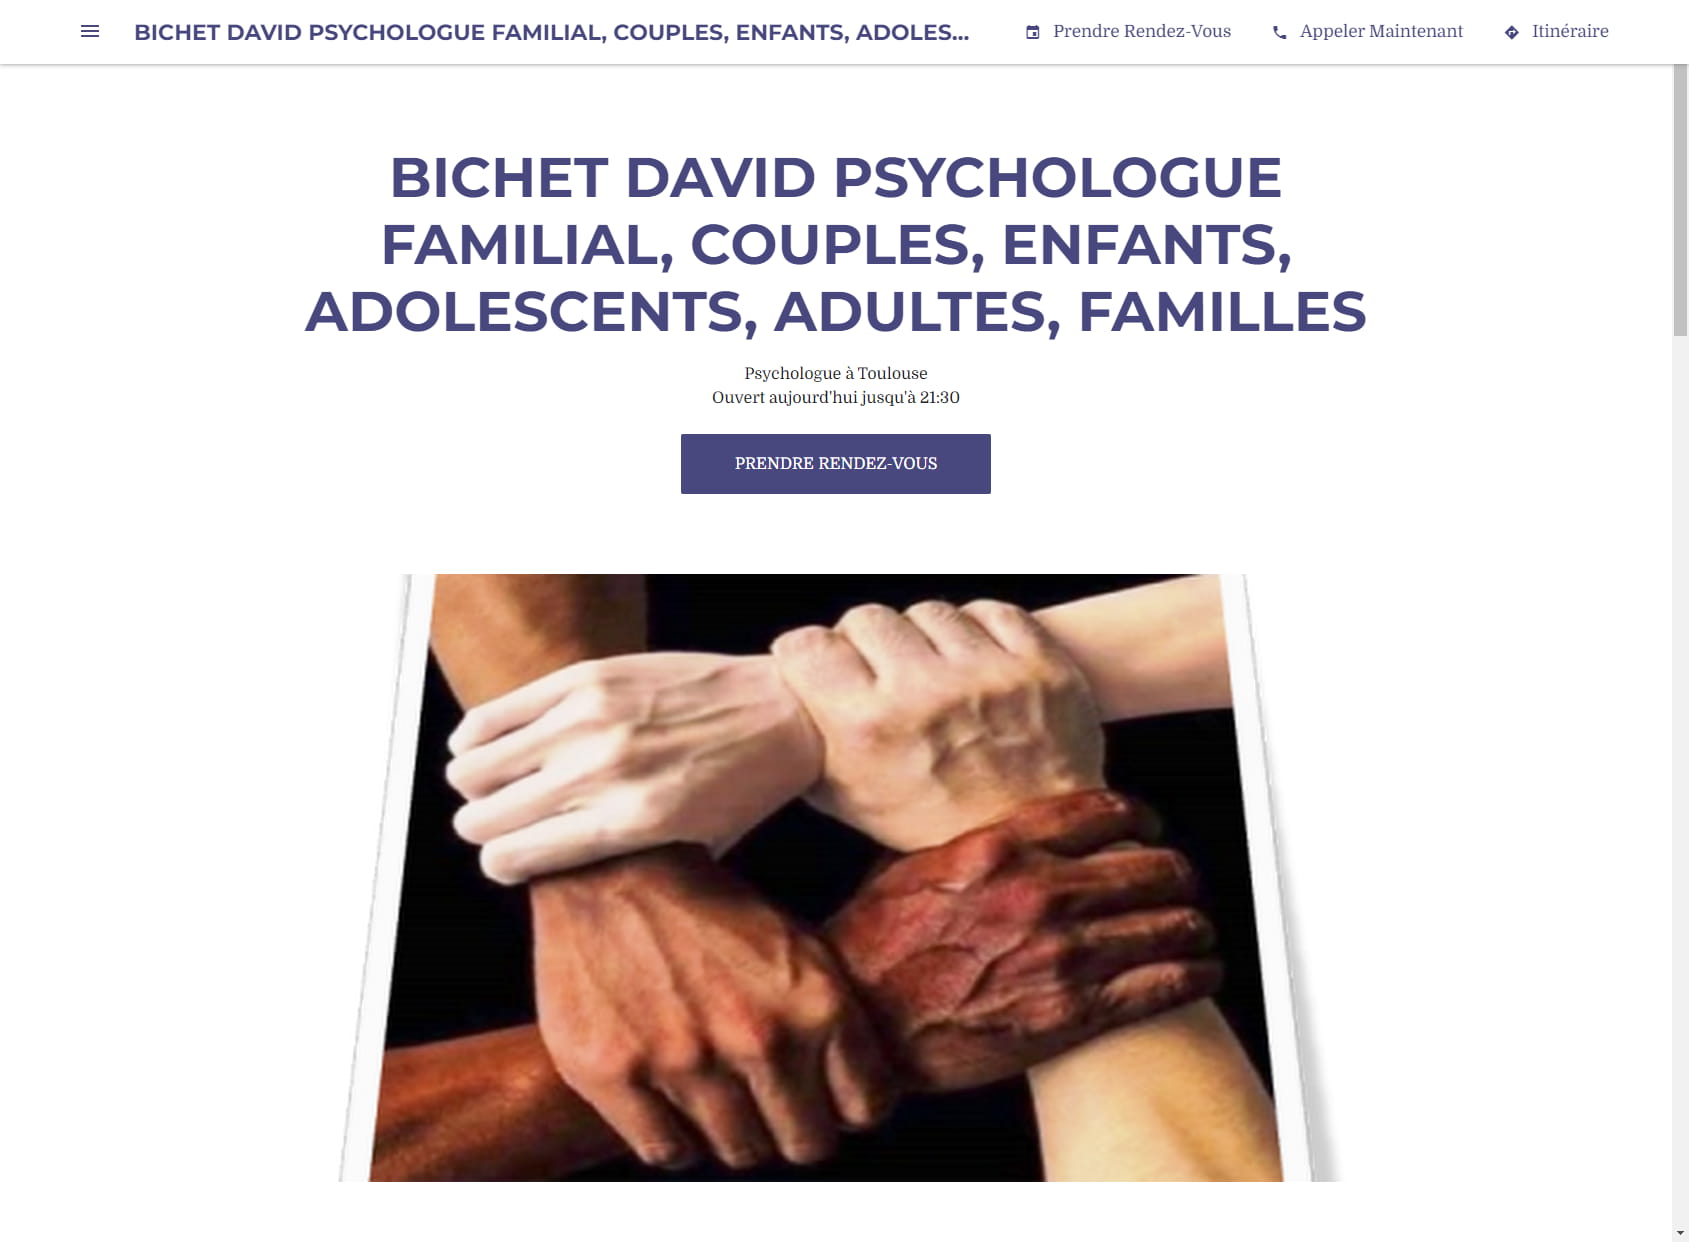 BICHET DAVID PSYCHOLOGUE FAMILIAL, COUPLES, ENFANTS, ADOLESCENTS, ADULTES, FAMILLES